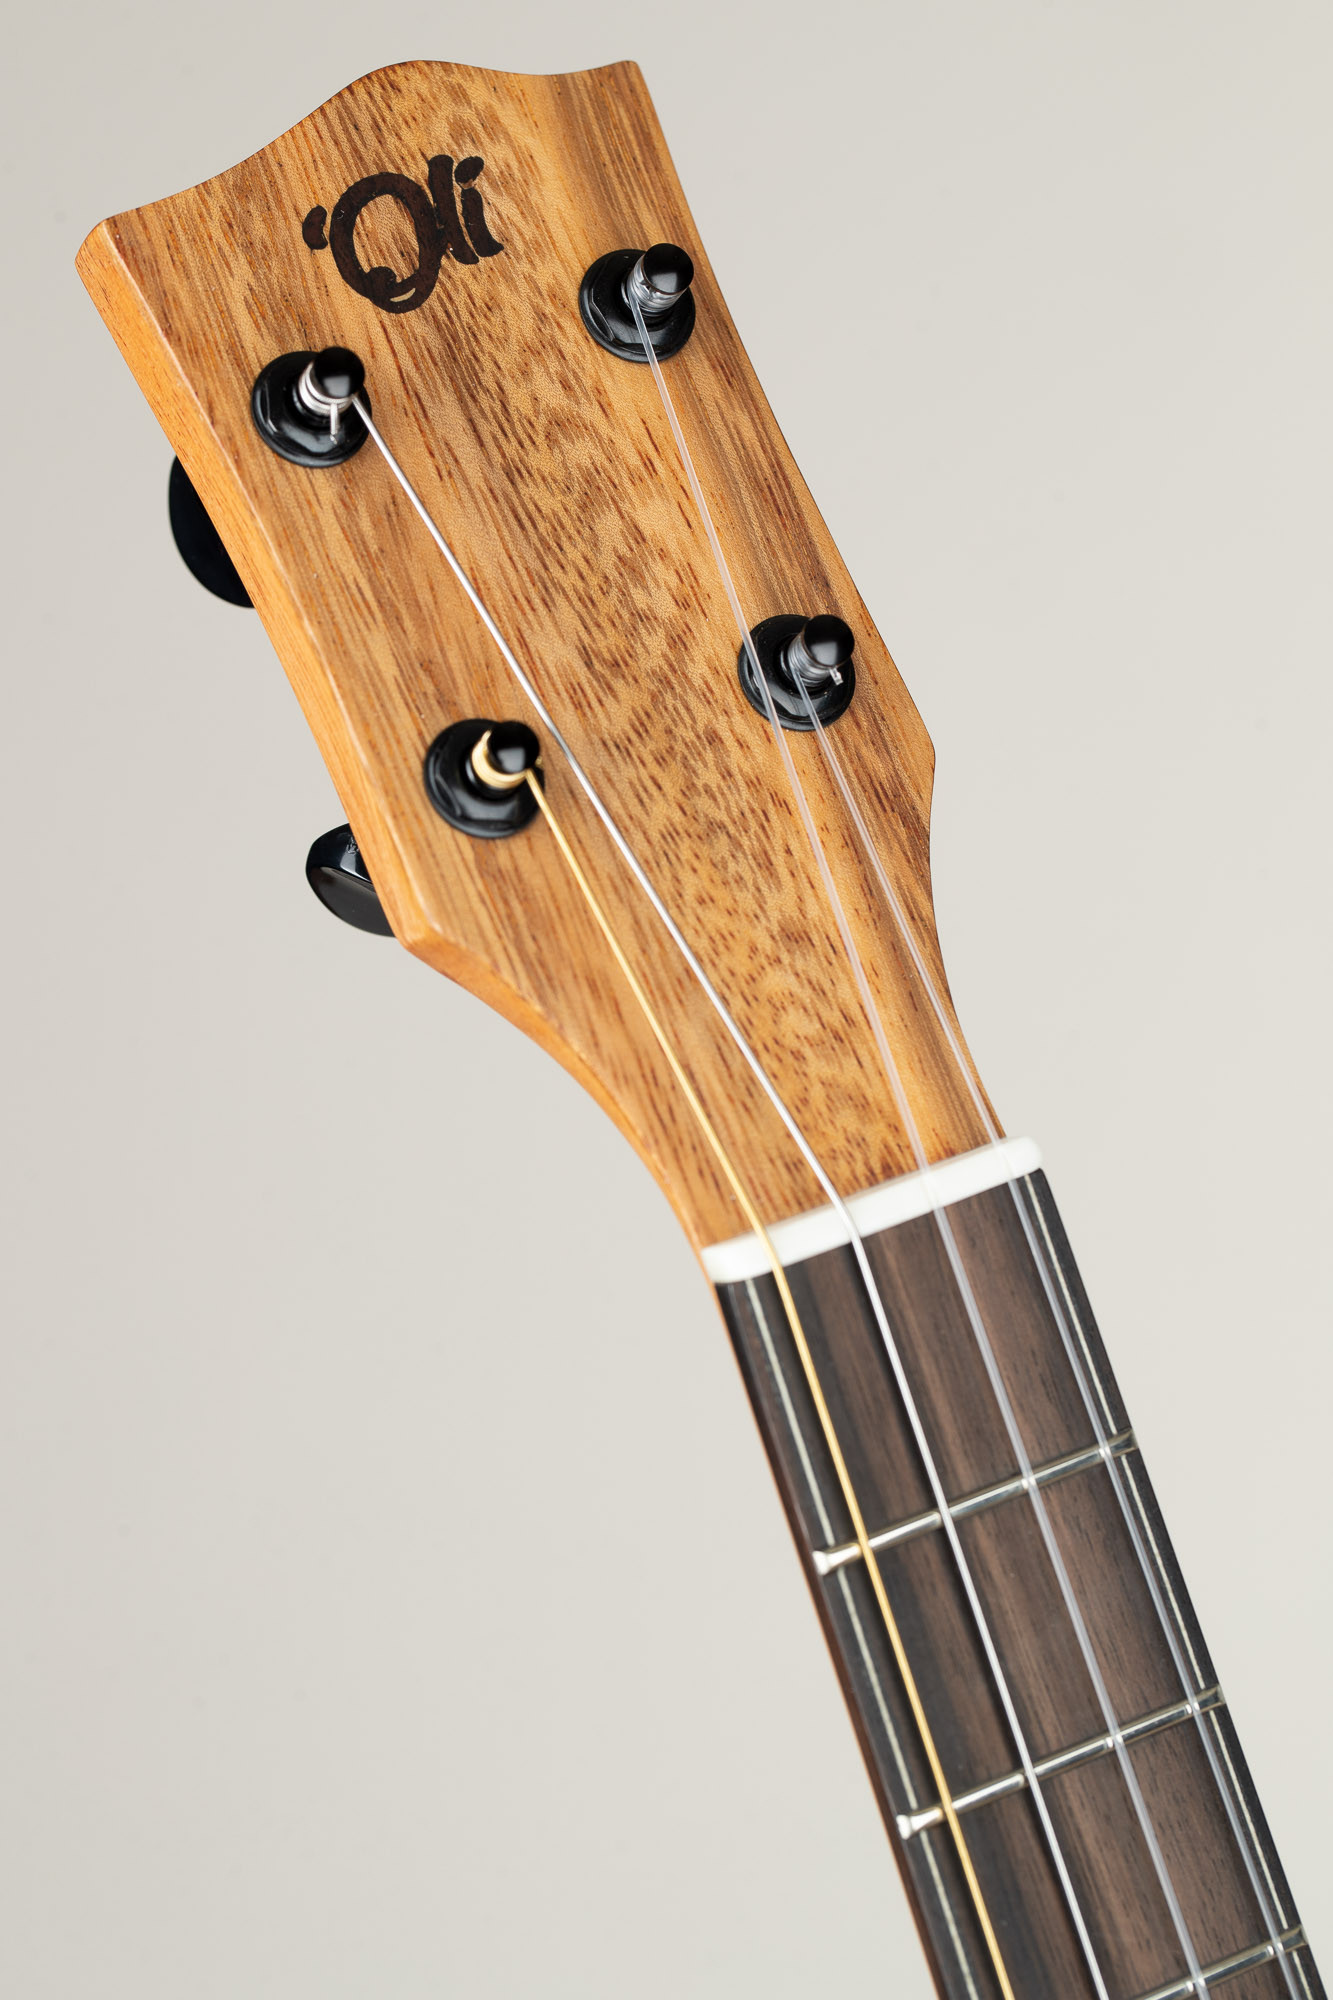 Caraya SP-723CEQ 'Oakleaf' Burled Honey Round-Back Guitar w/EQ +